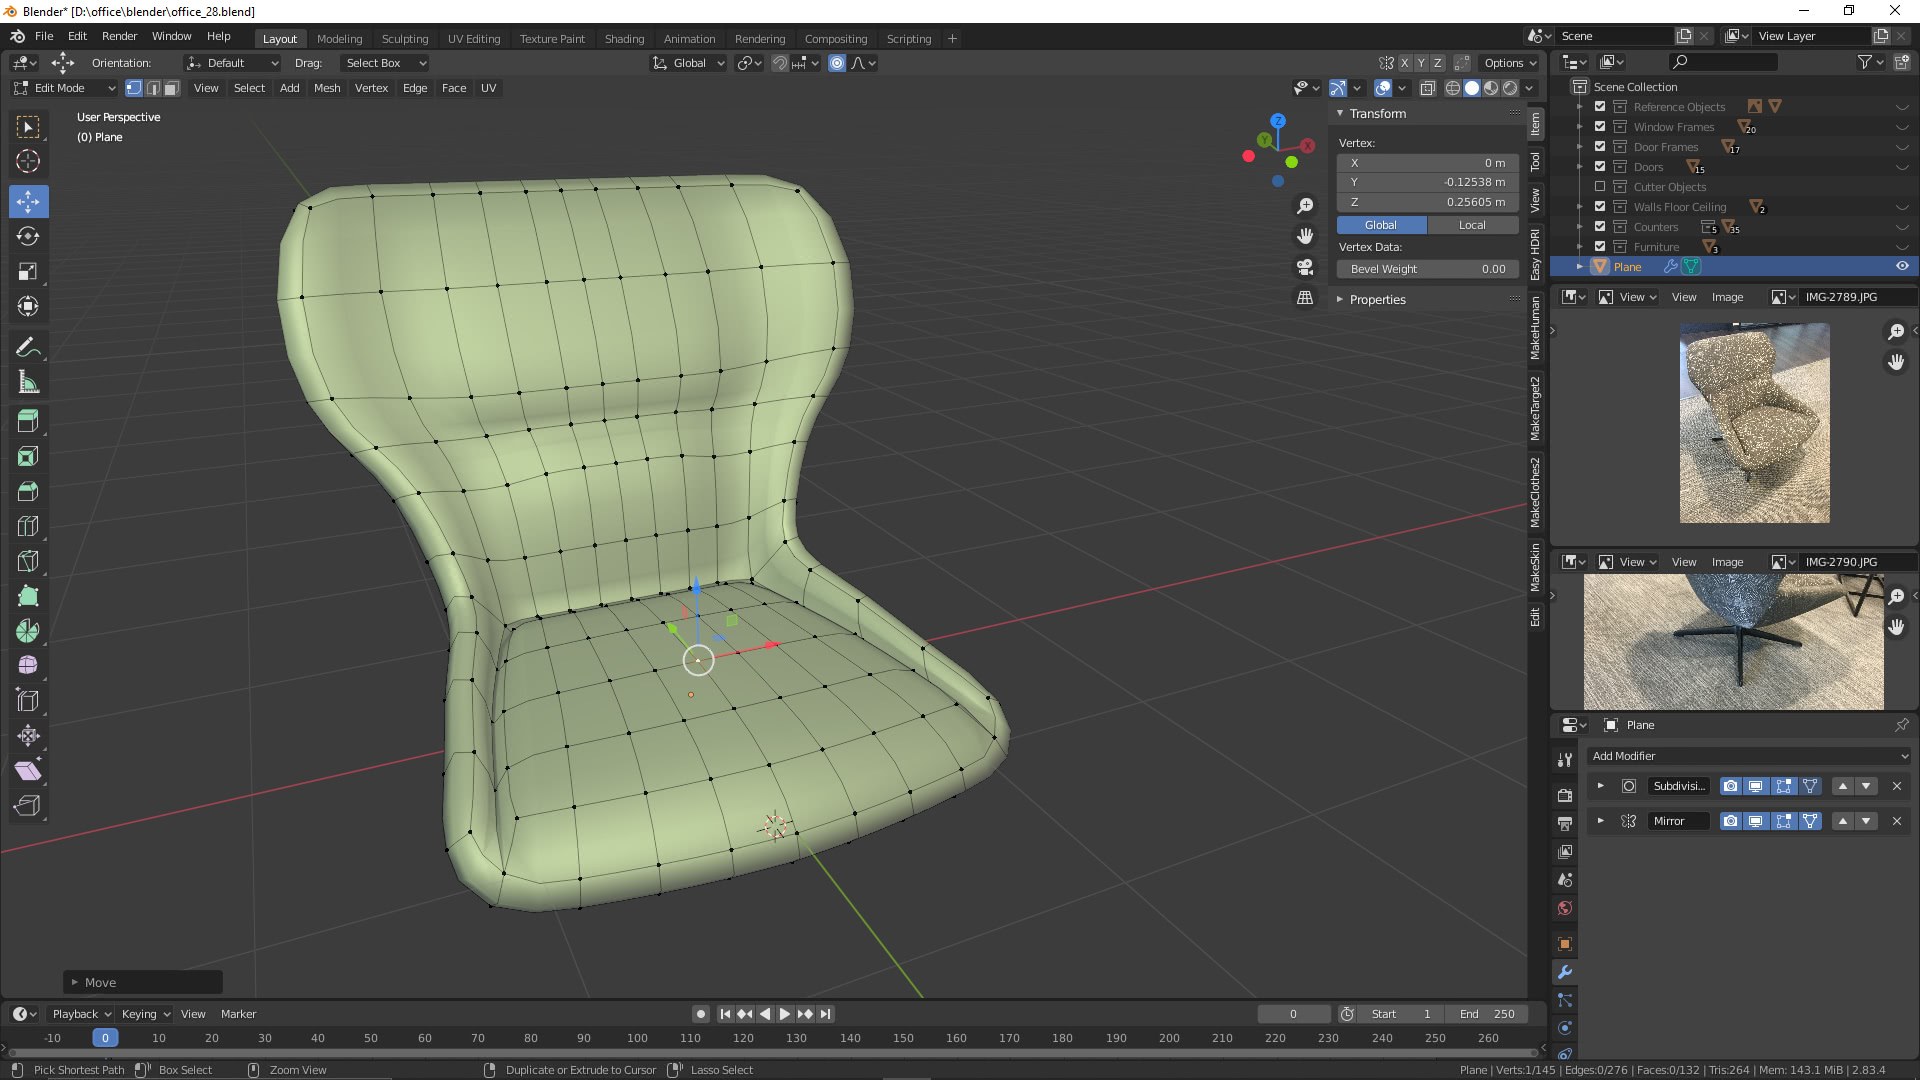 Visualisierung: Sessel 3D Visualisierung mit Blender